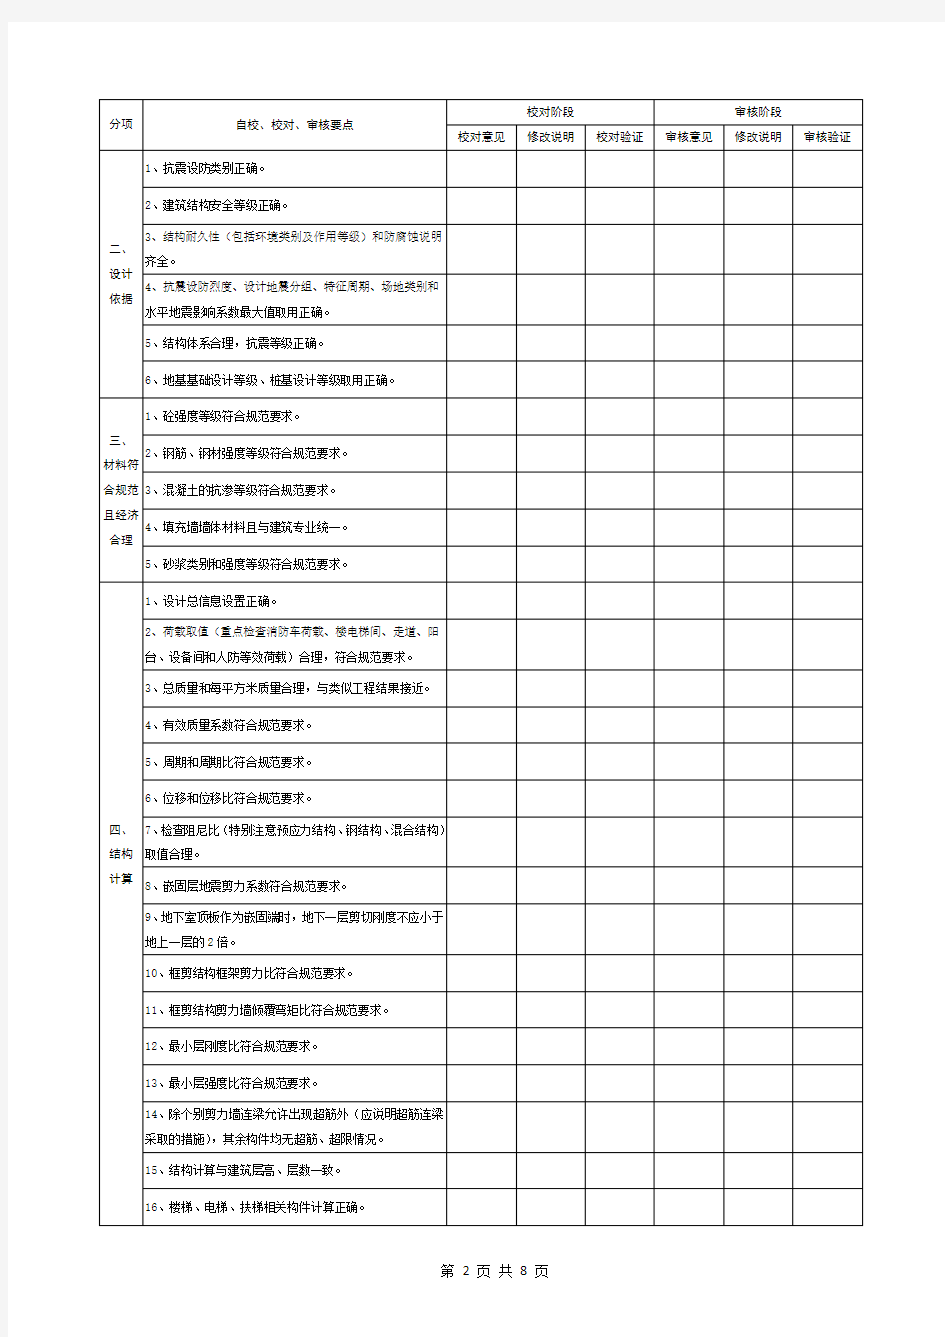 (完整版)施工图精细化设计校审表(结构)((1)